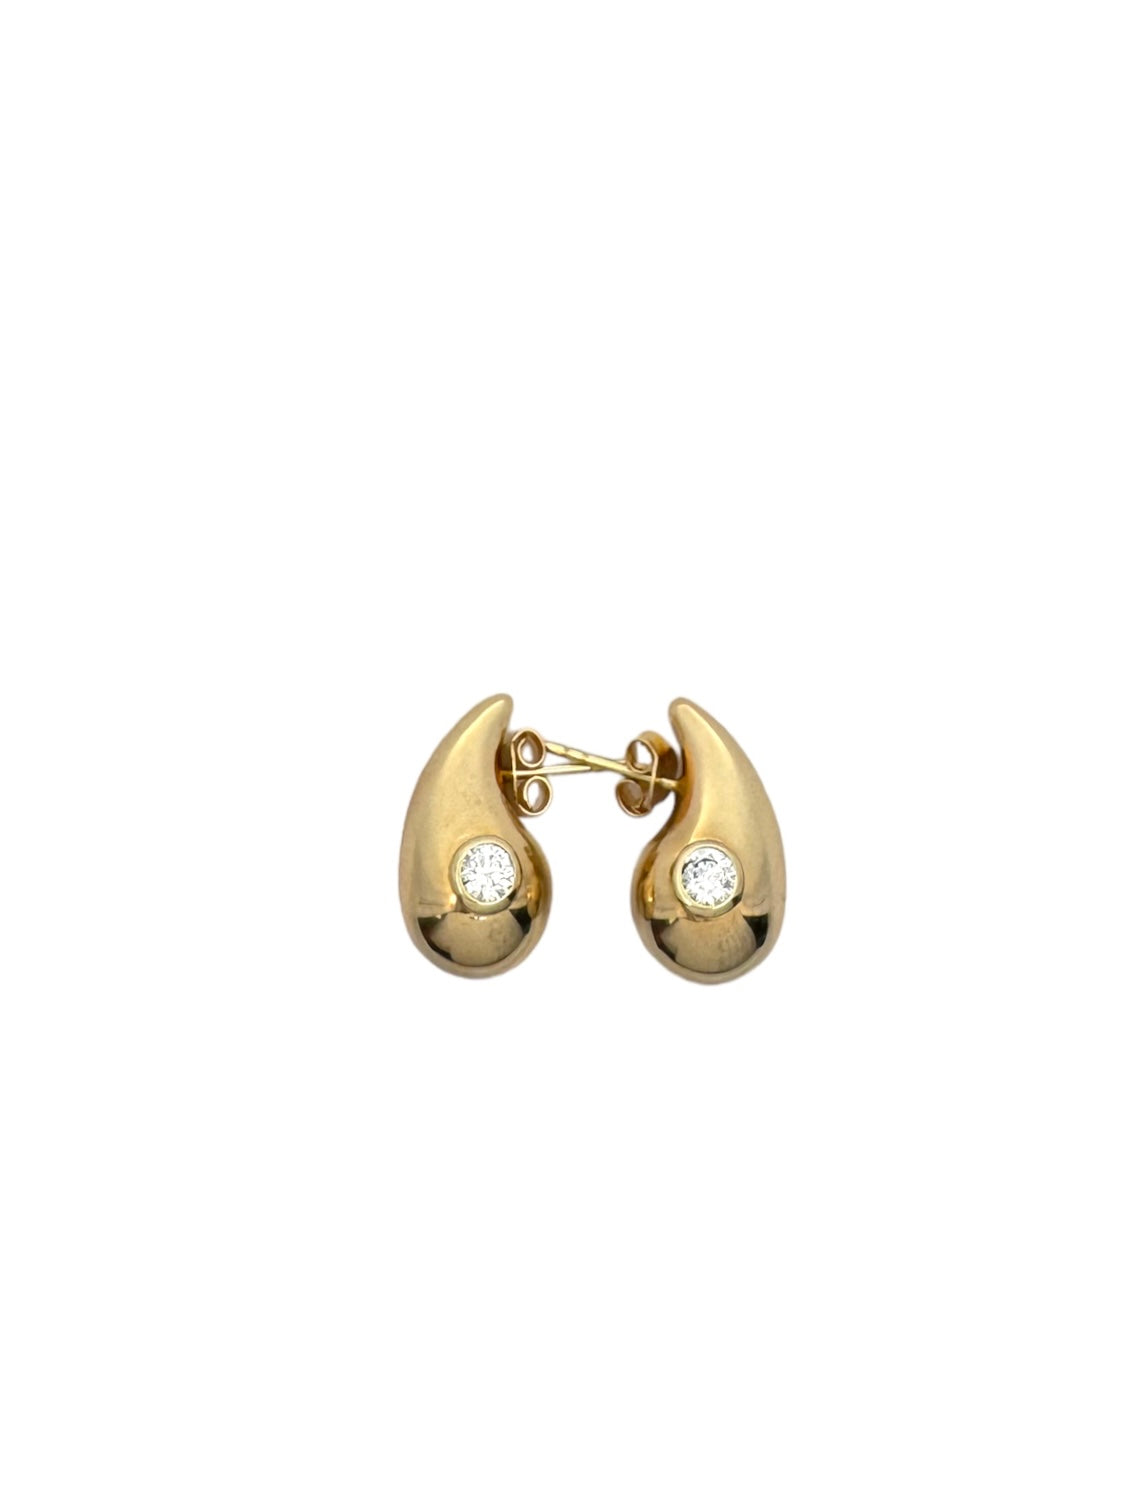 New 14K CZ Drop Earrings H.J™️